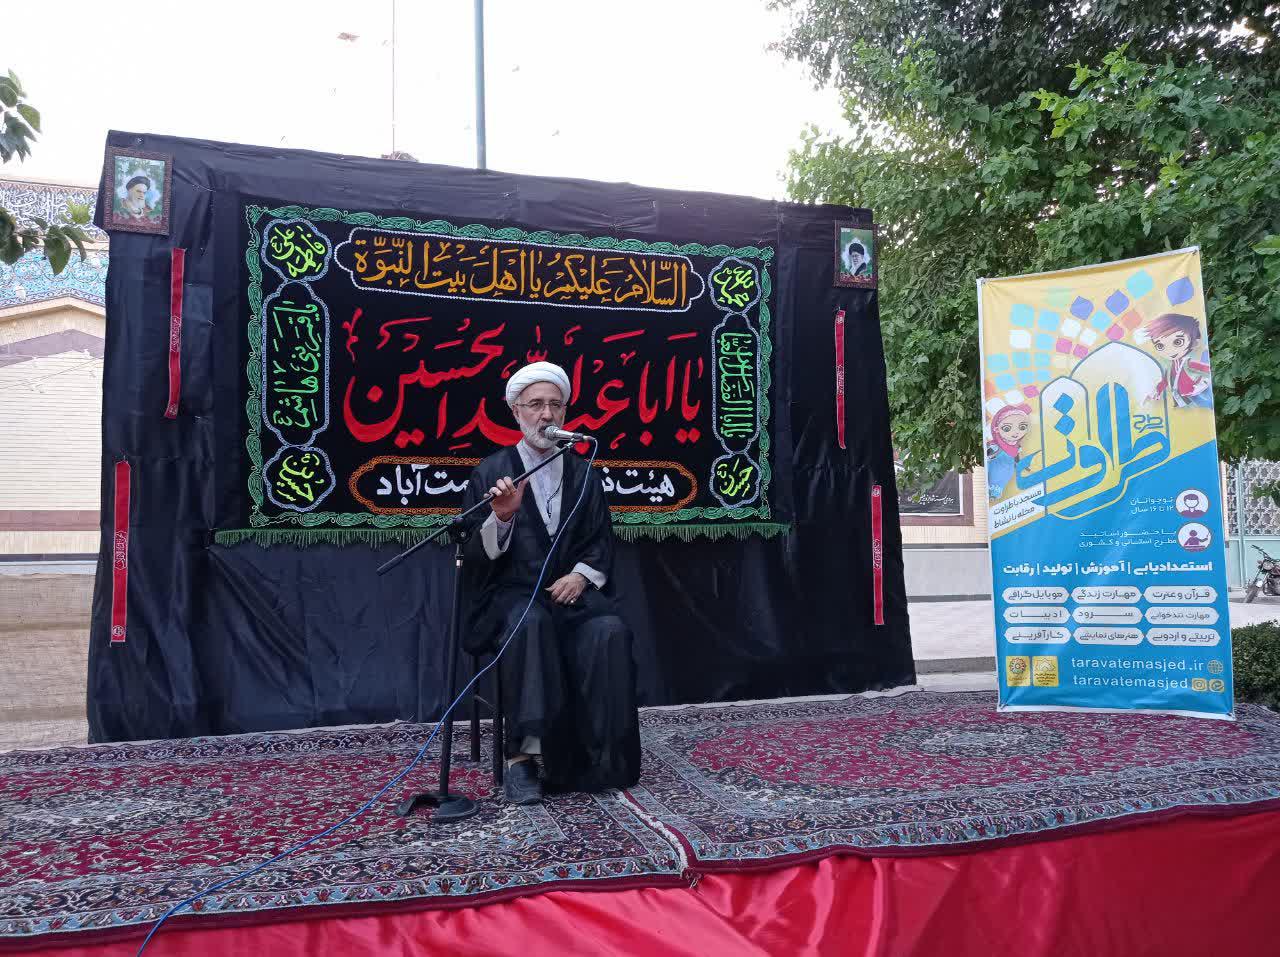 افتتاحیه طرح استانی « طراوت» در مسجدهای جامع و قلعه رحمت آباد یزد  